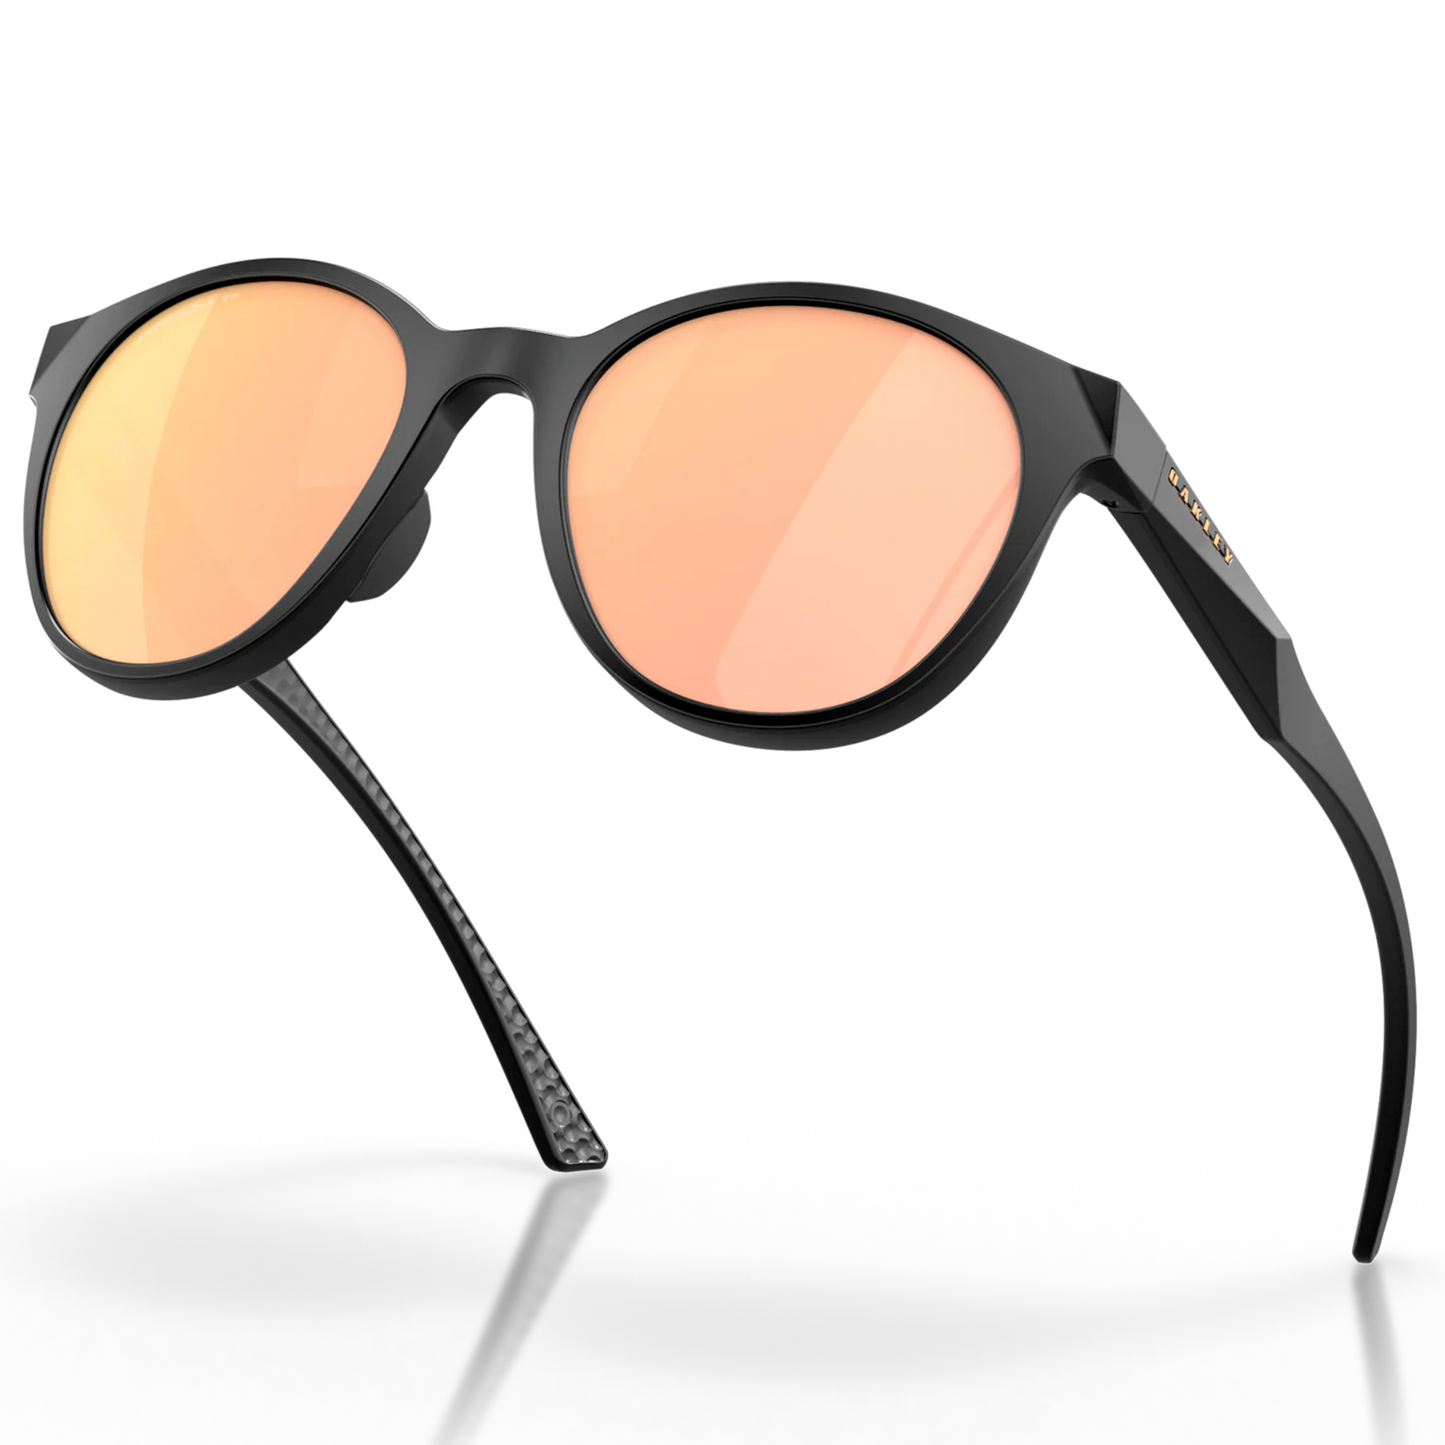 Oakley Spindrift Sunglasses (Matte Black) Prizm Rose Gold Polarized Lens - Free Case